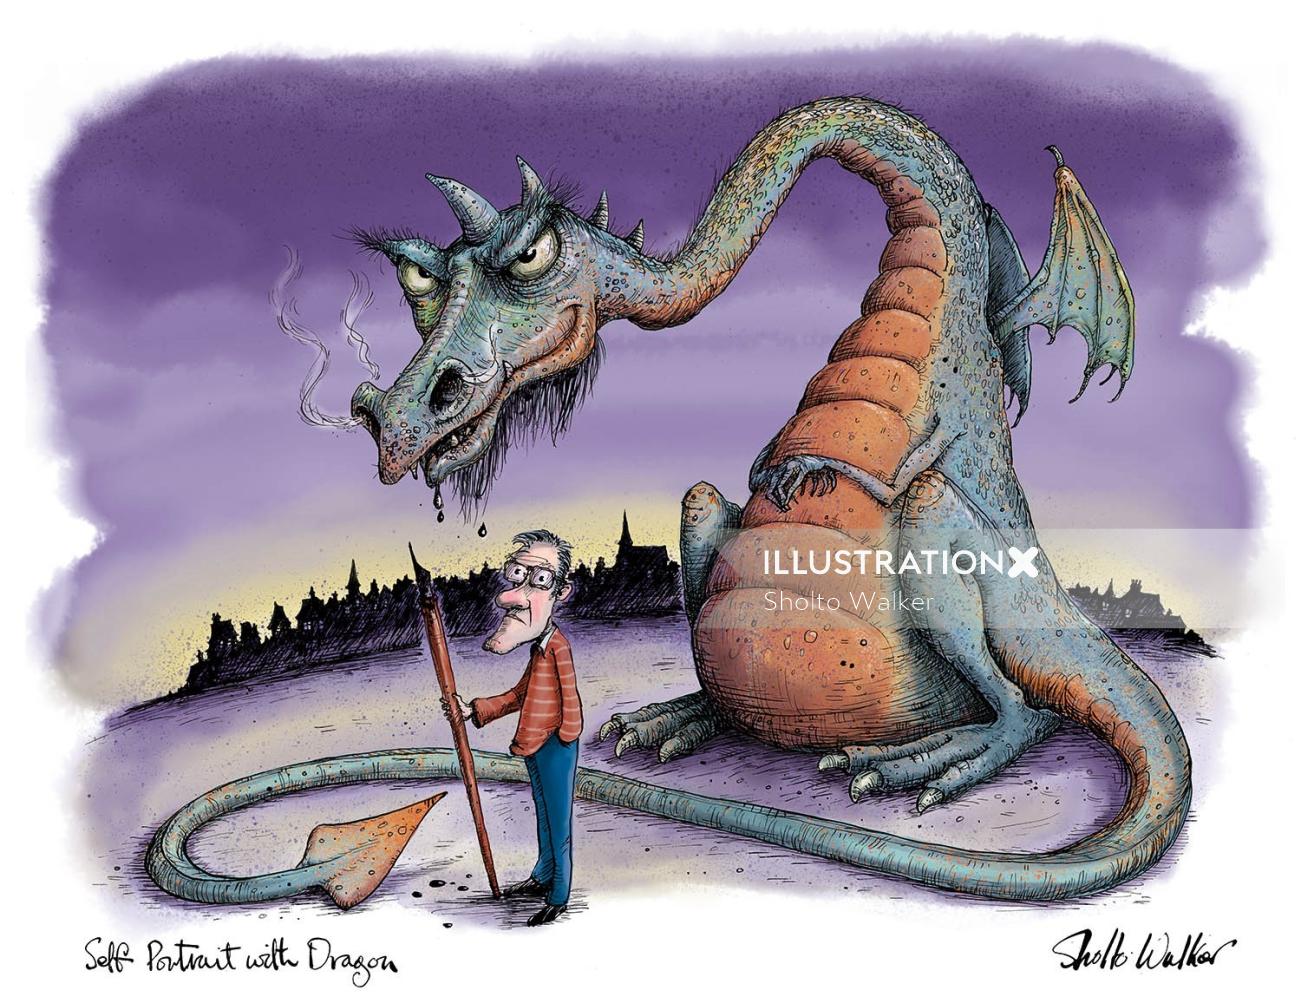 Illustration pour un dragon